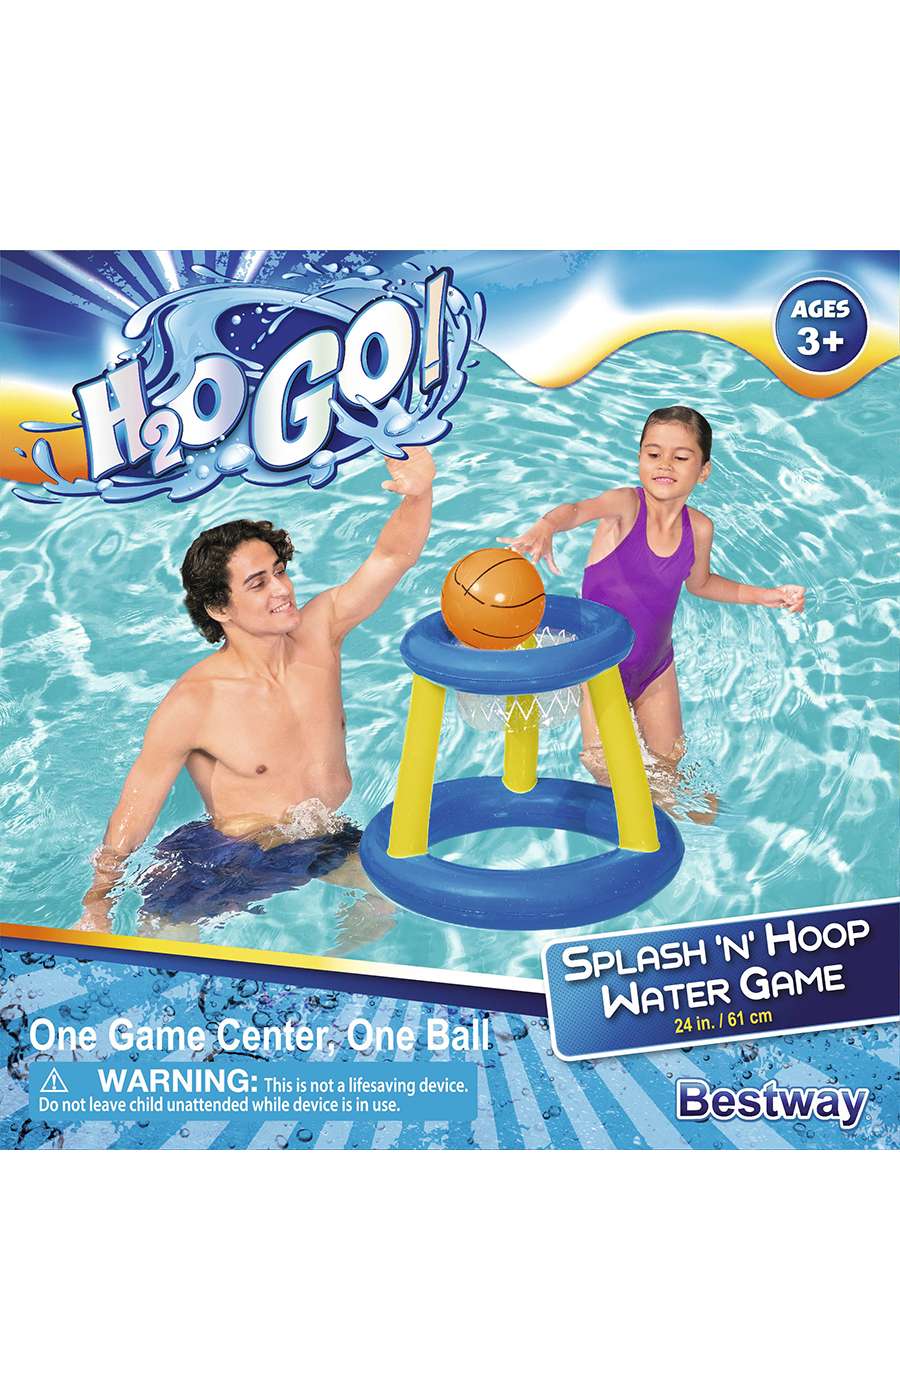 H2O Go! Splash 'N' Hoop Water Game; image 1 of 2